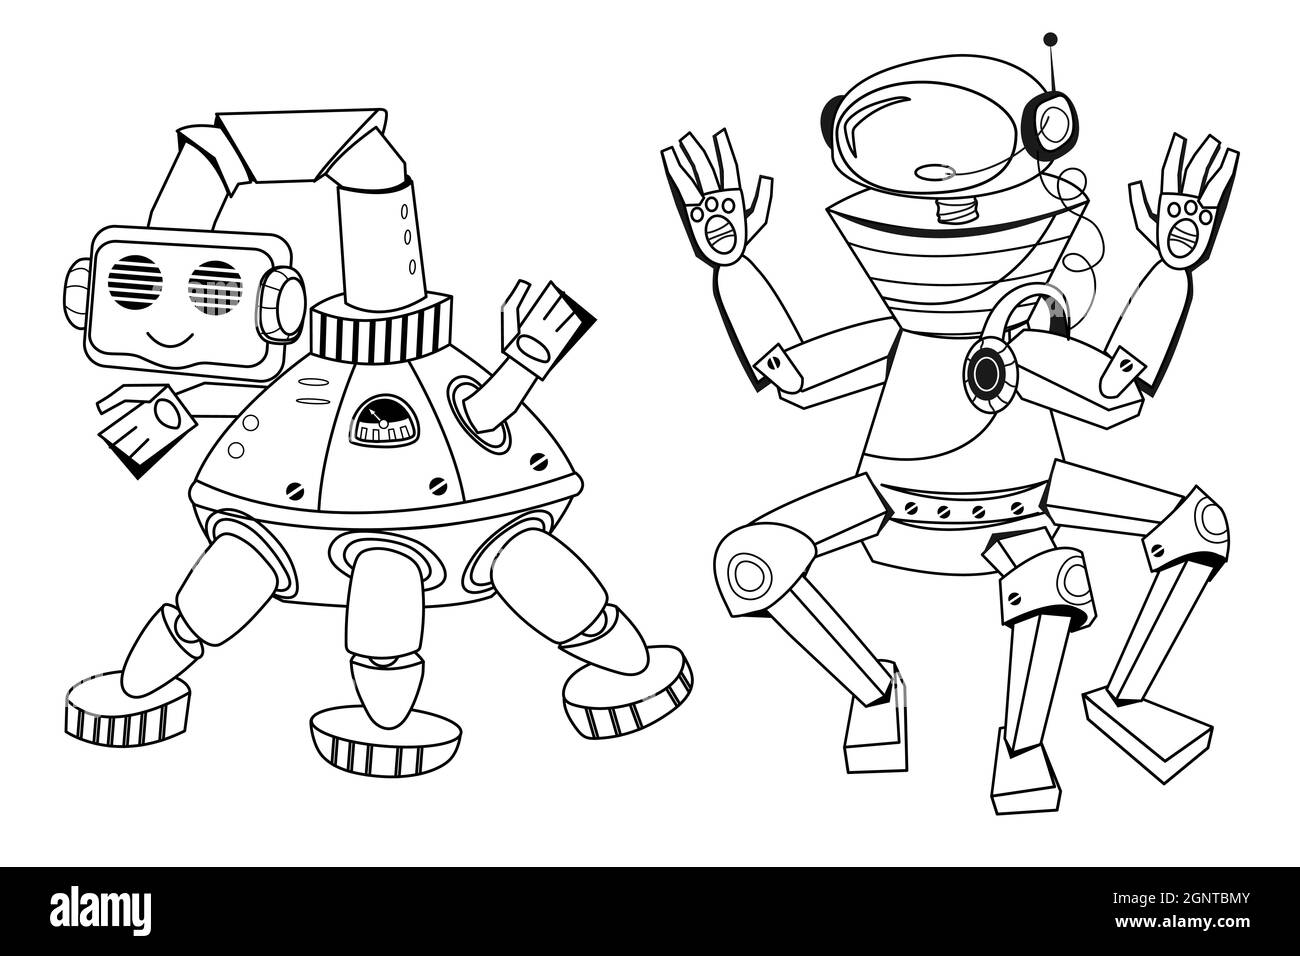 Skizzieren niedlichen Roboter Zeichentrickfigur für Kinder Farbbuch, Vektor-Illustration isoliert auf weißem Hintergrund. Schwarze Linie Konturbild des Roboters für Stock Vektor